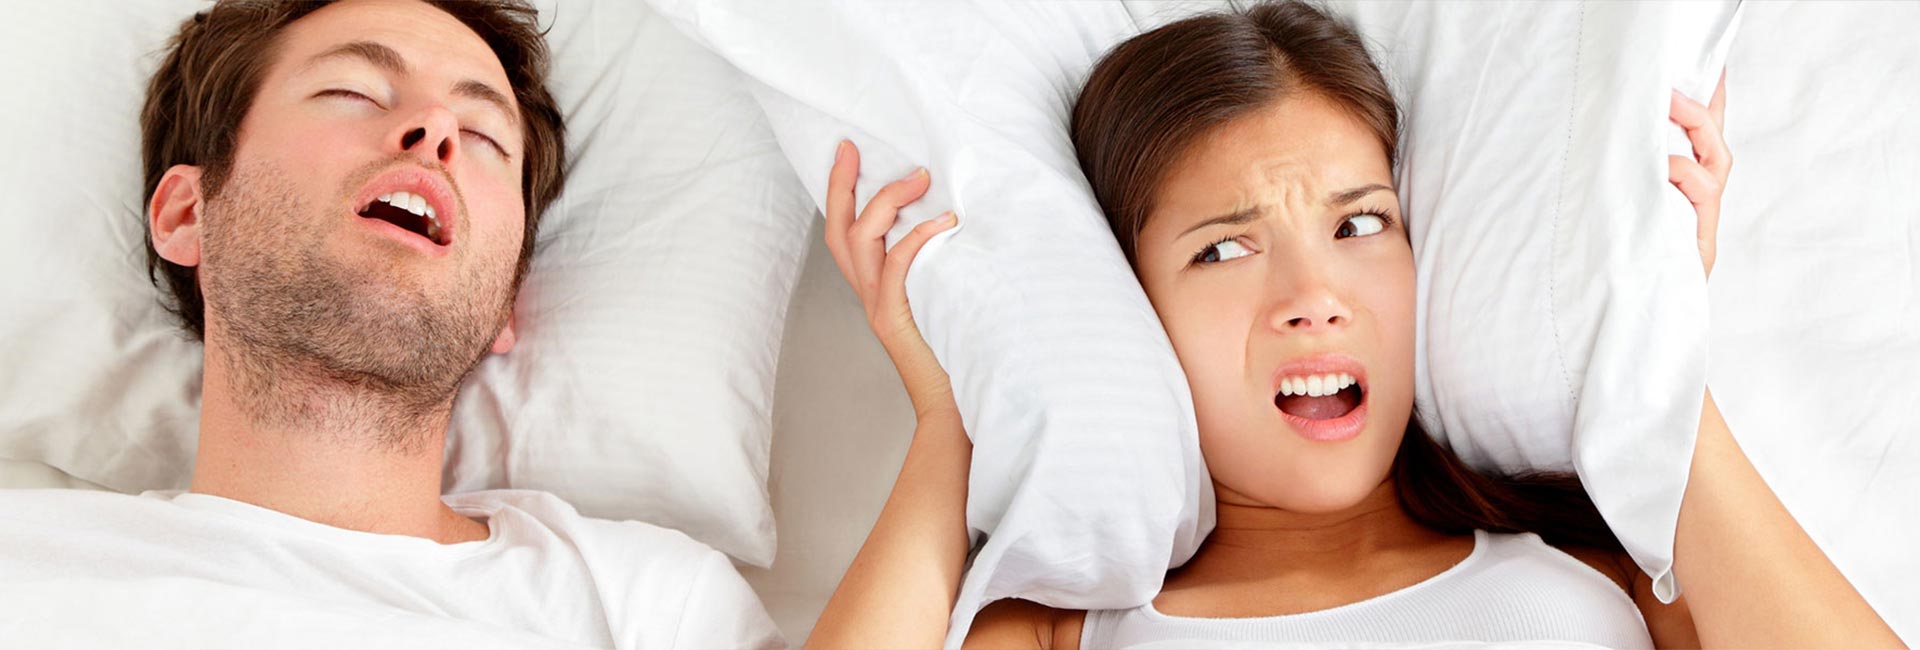 Snoring & sleep apnea